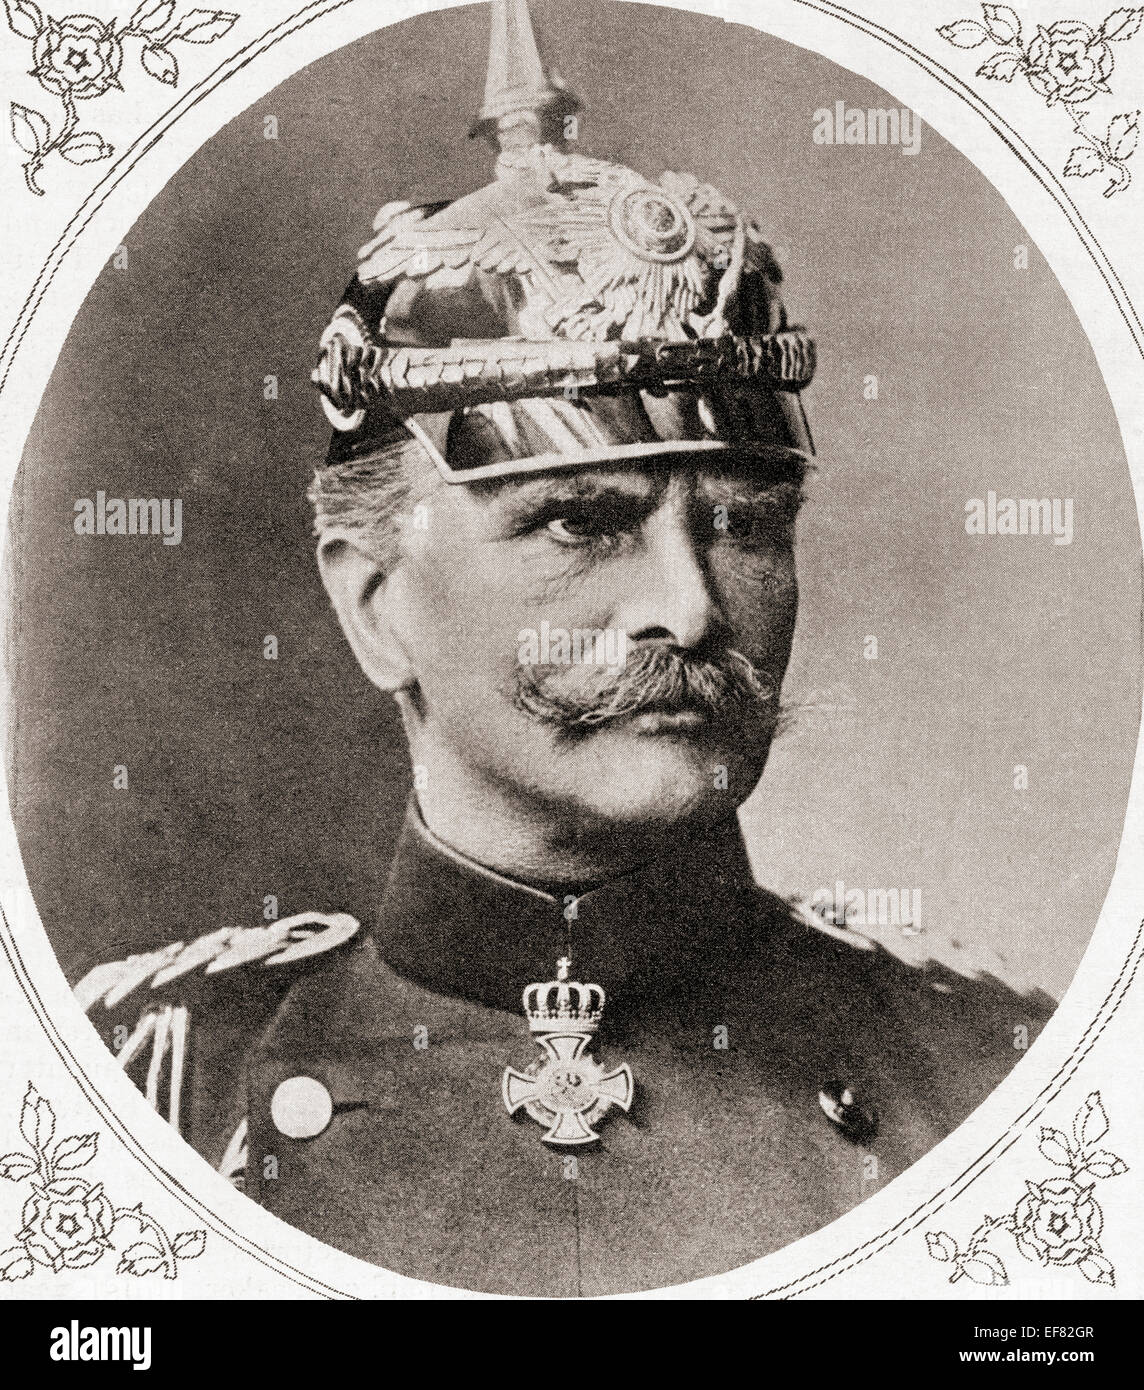 Anton Ludwig August von Mackensen, 1849 - 1945, nato Agosto Mackensen. Soldato tedesco e il maresciallo di campo. Dalla guerra illustrato News, pubblicato 1915. Foto Stock